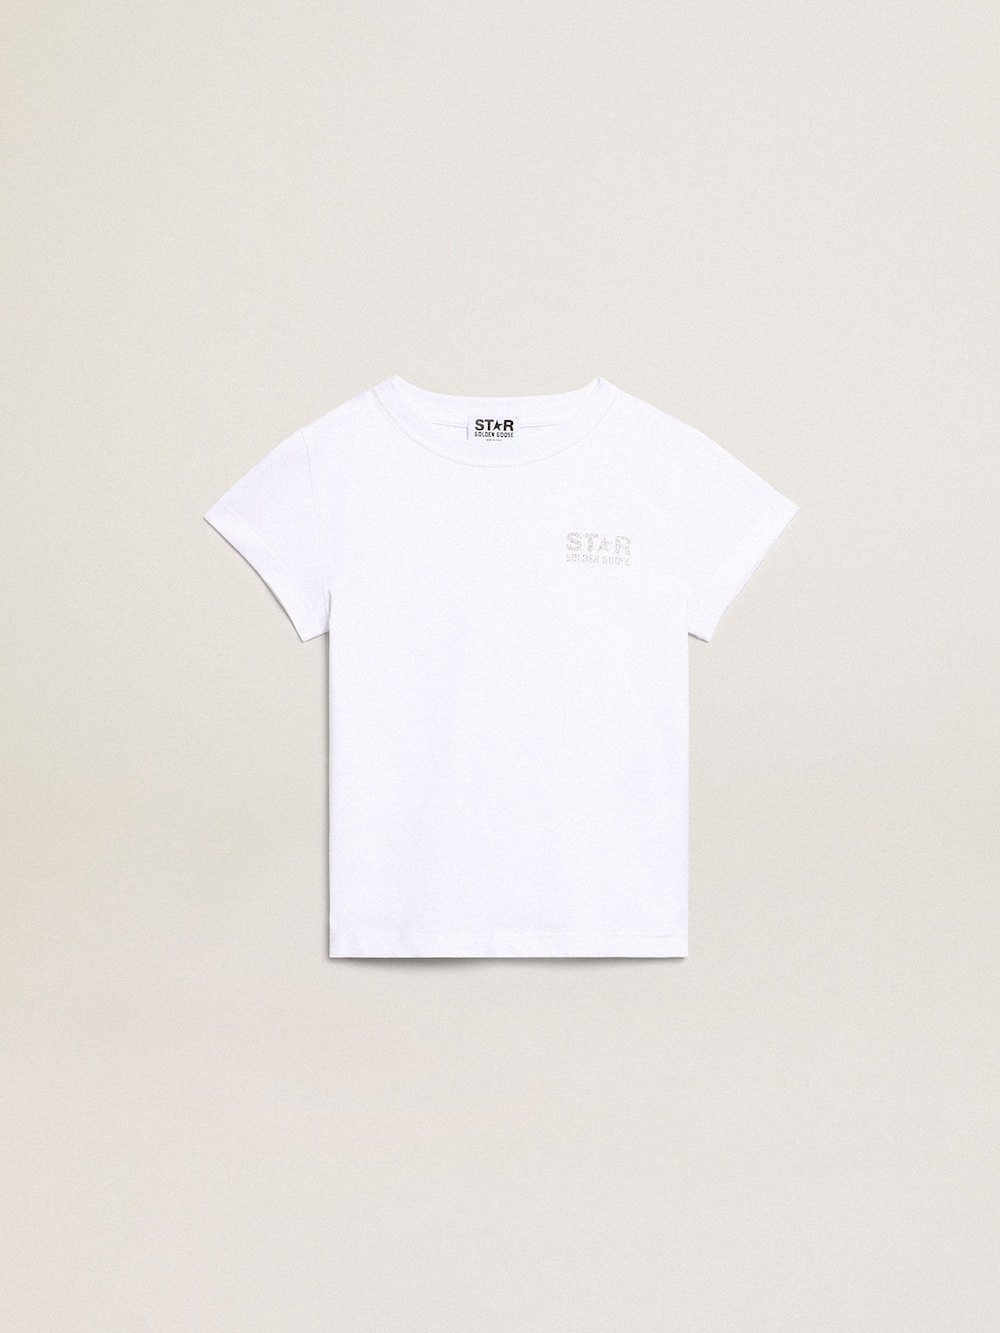 Golden Goose - Weißes und silbernes T-Shirt mit Logo und Maxi-Stern in Silberglitzer in 